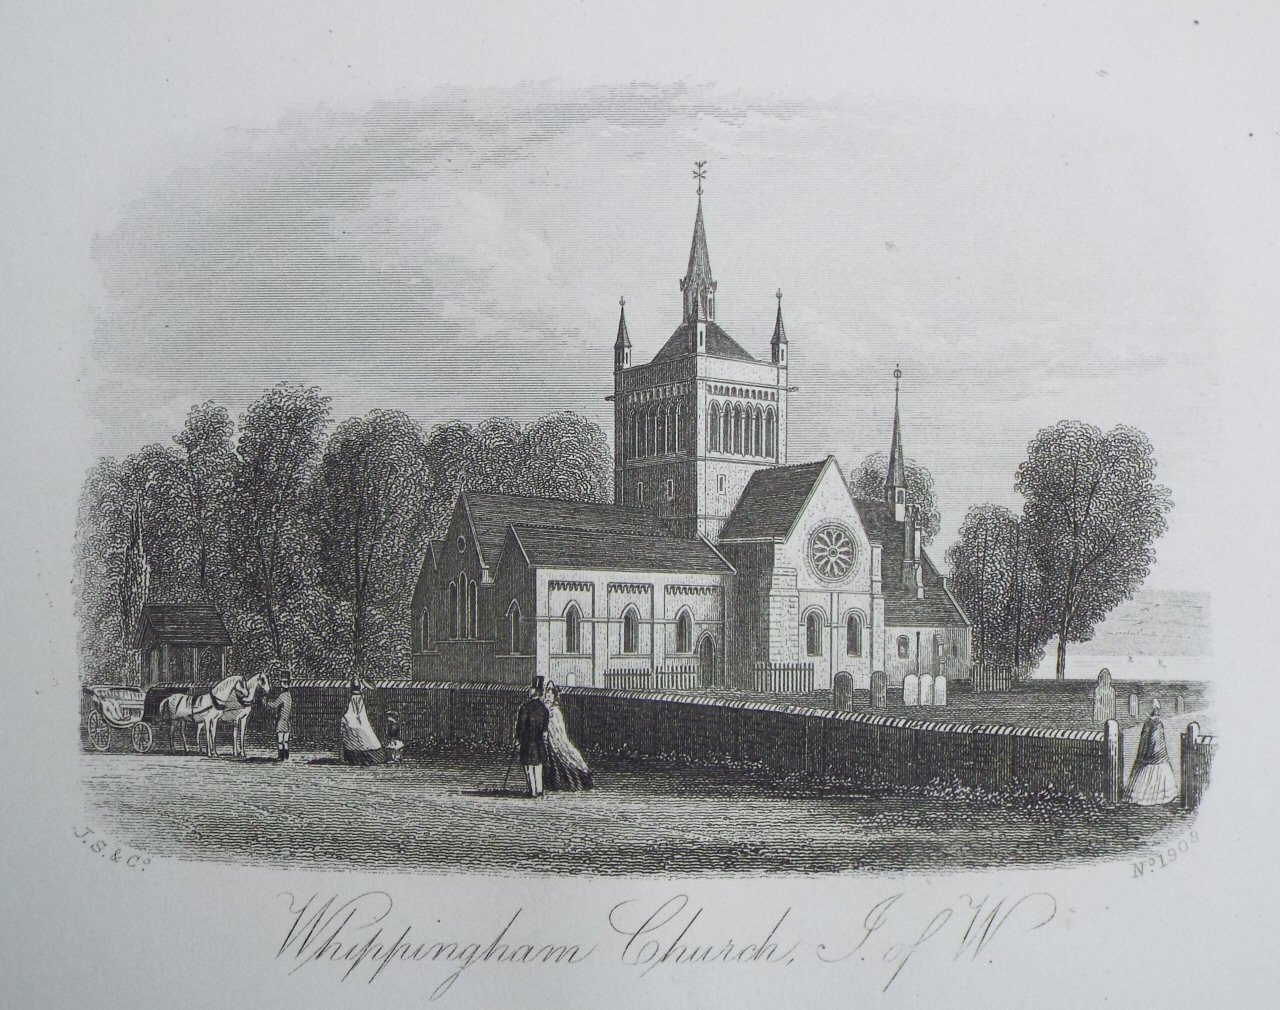 Steel Vignette - Whippingham Church, I. of W. - J.S.